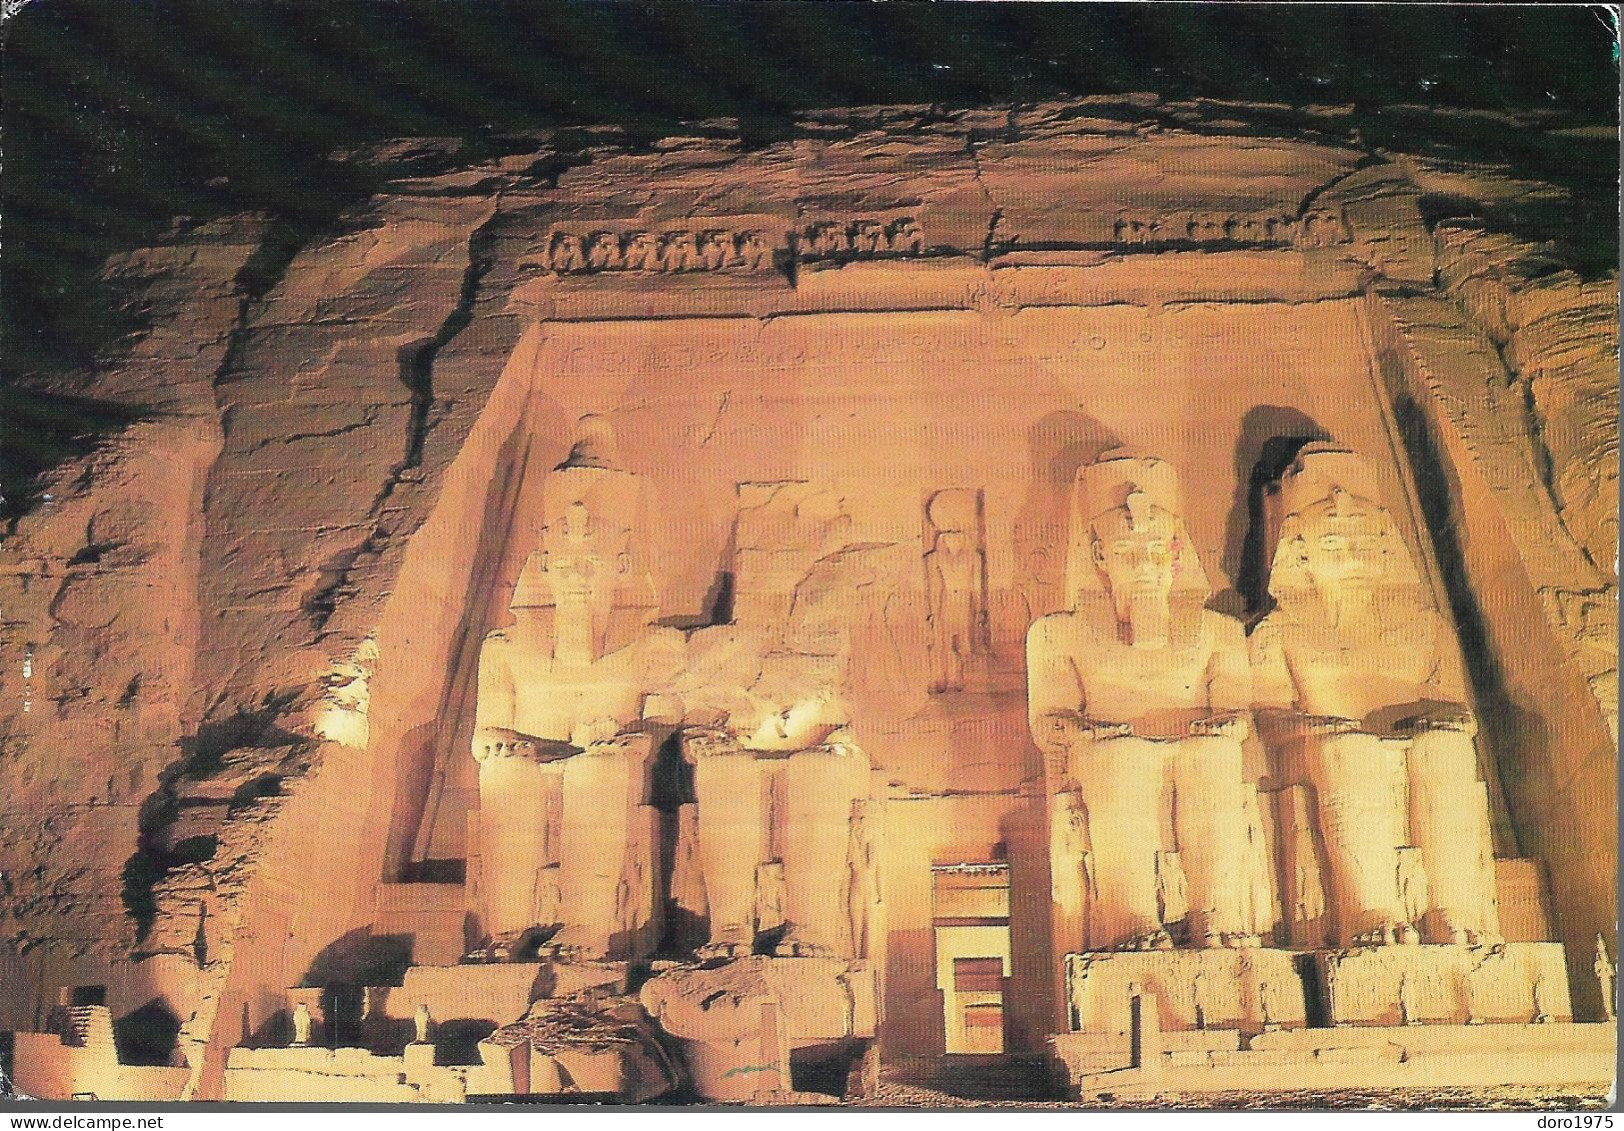 EGYPT - Abu Simbel Temple By Night - Used Postcard - Tempels Van Aboe Simbel